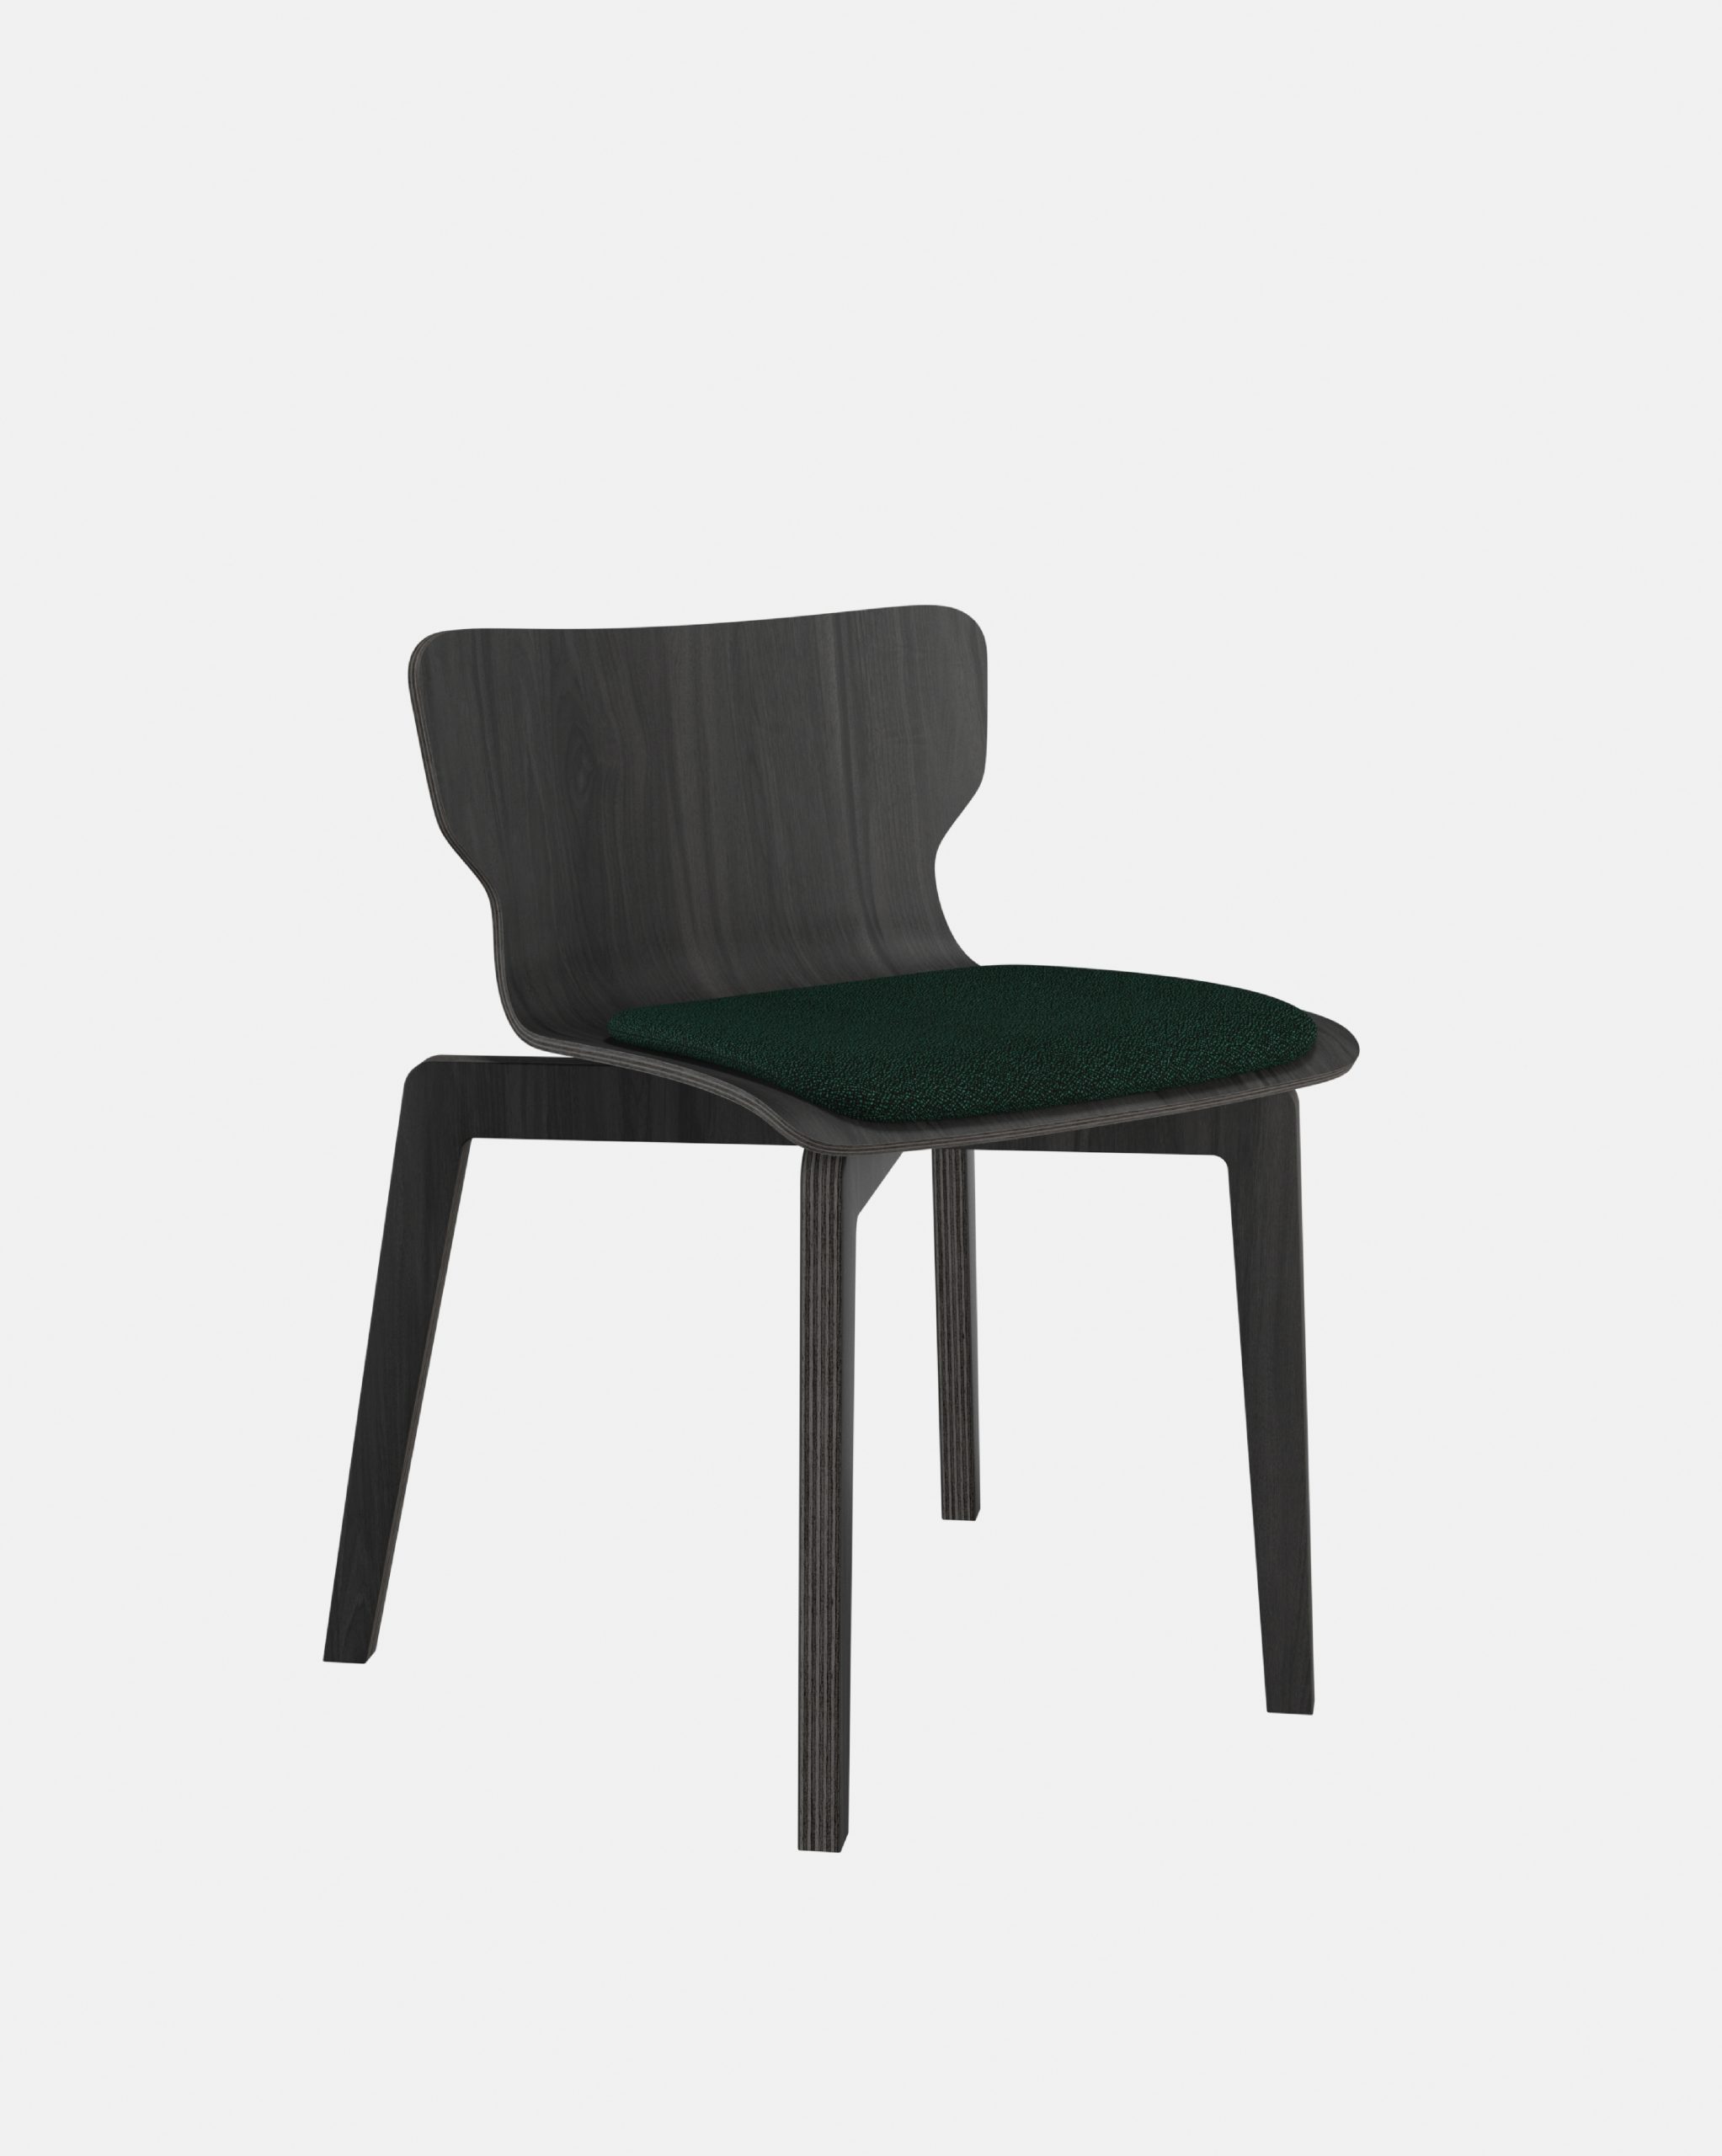 Chaise empilable, chaise bois français noir, chaise éco conception